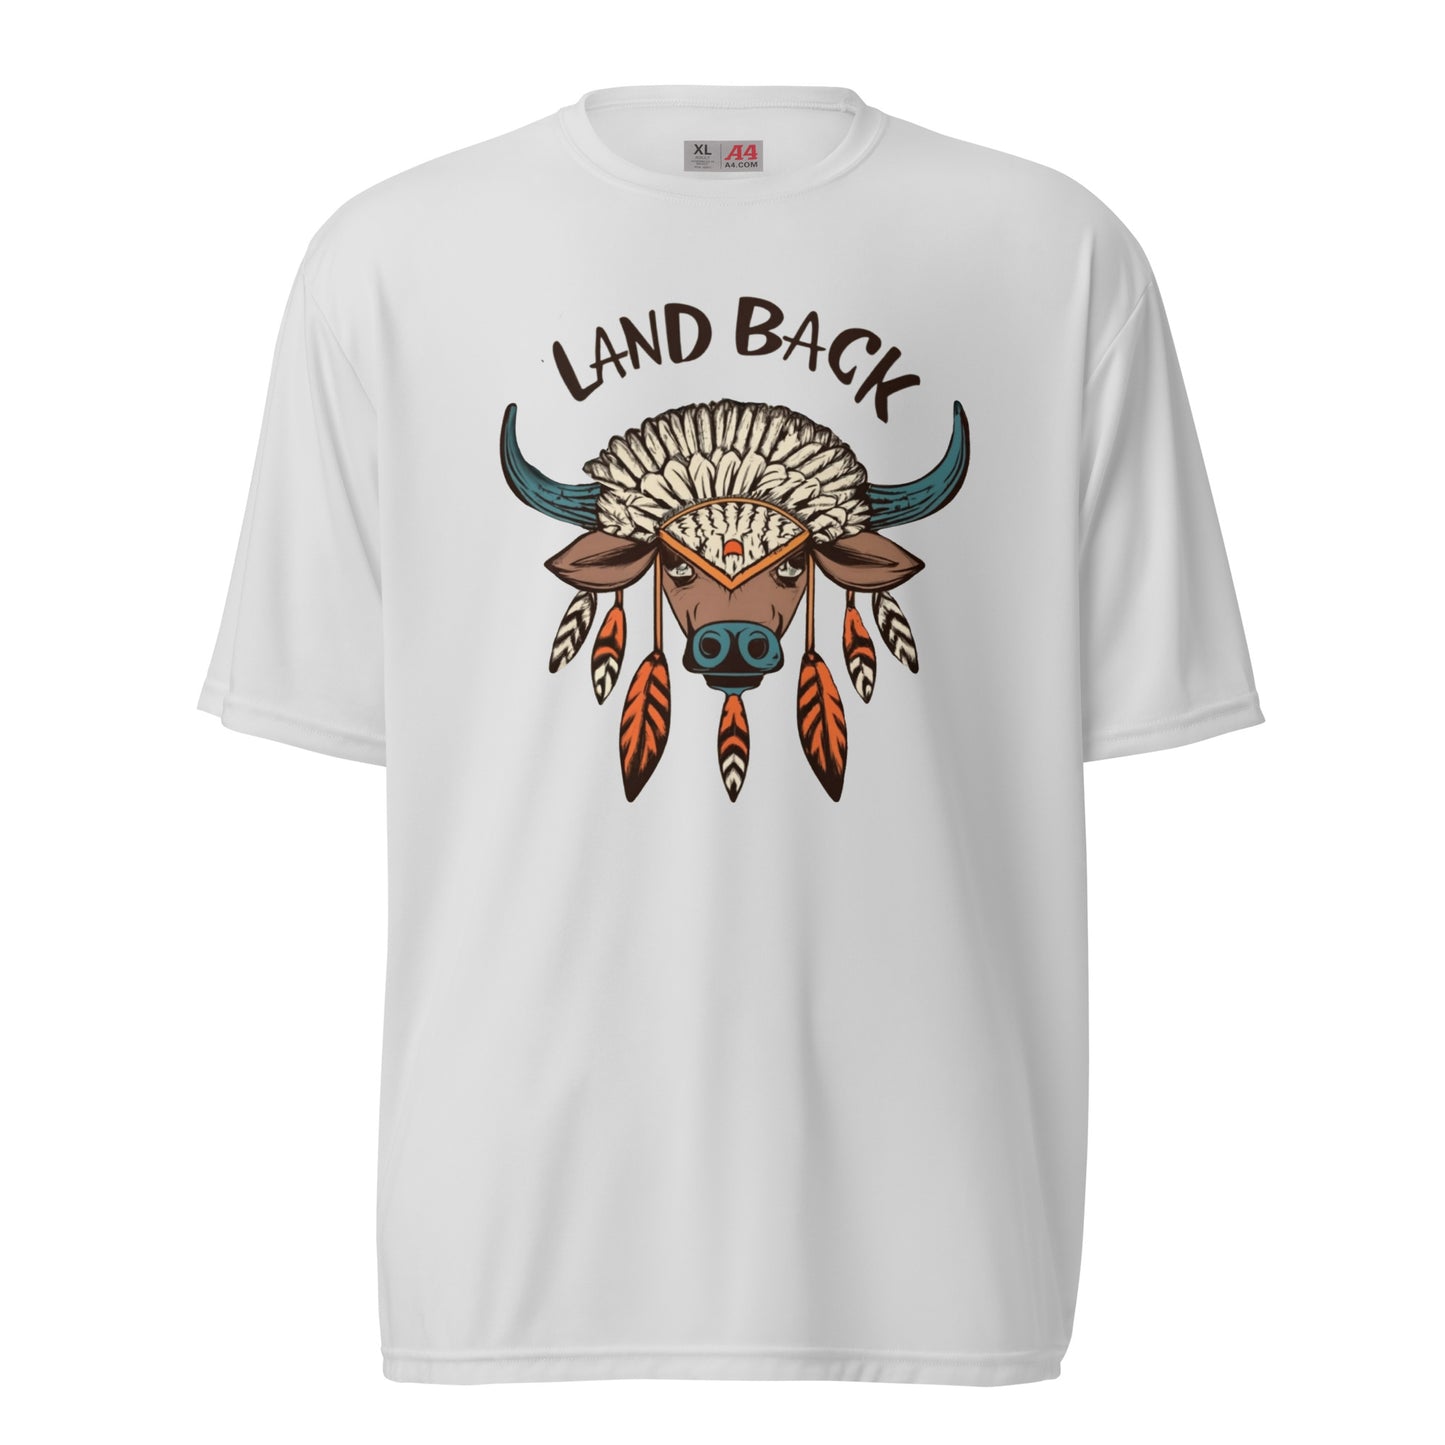 Buffalo Medicine - Land Back- Unisex performance crew neck t-shirt